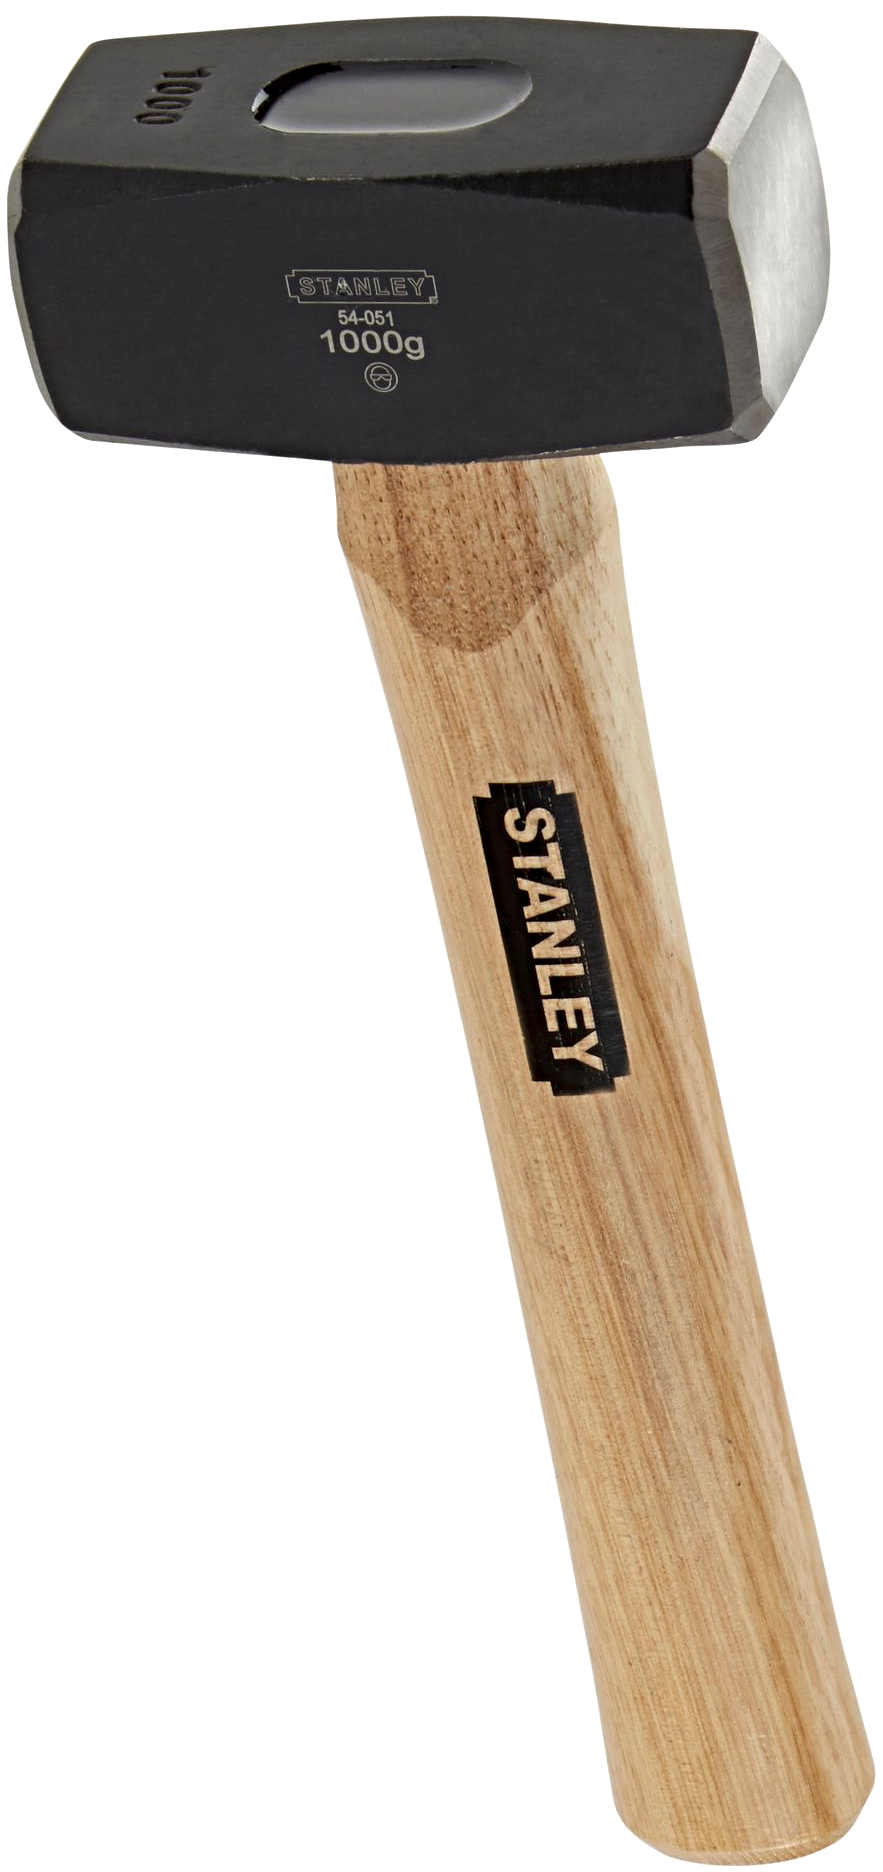 STANLEY 1-54-051 palice s dřevěnou rukojetí 1000 g / 40 mm